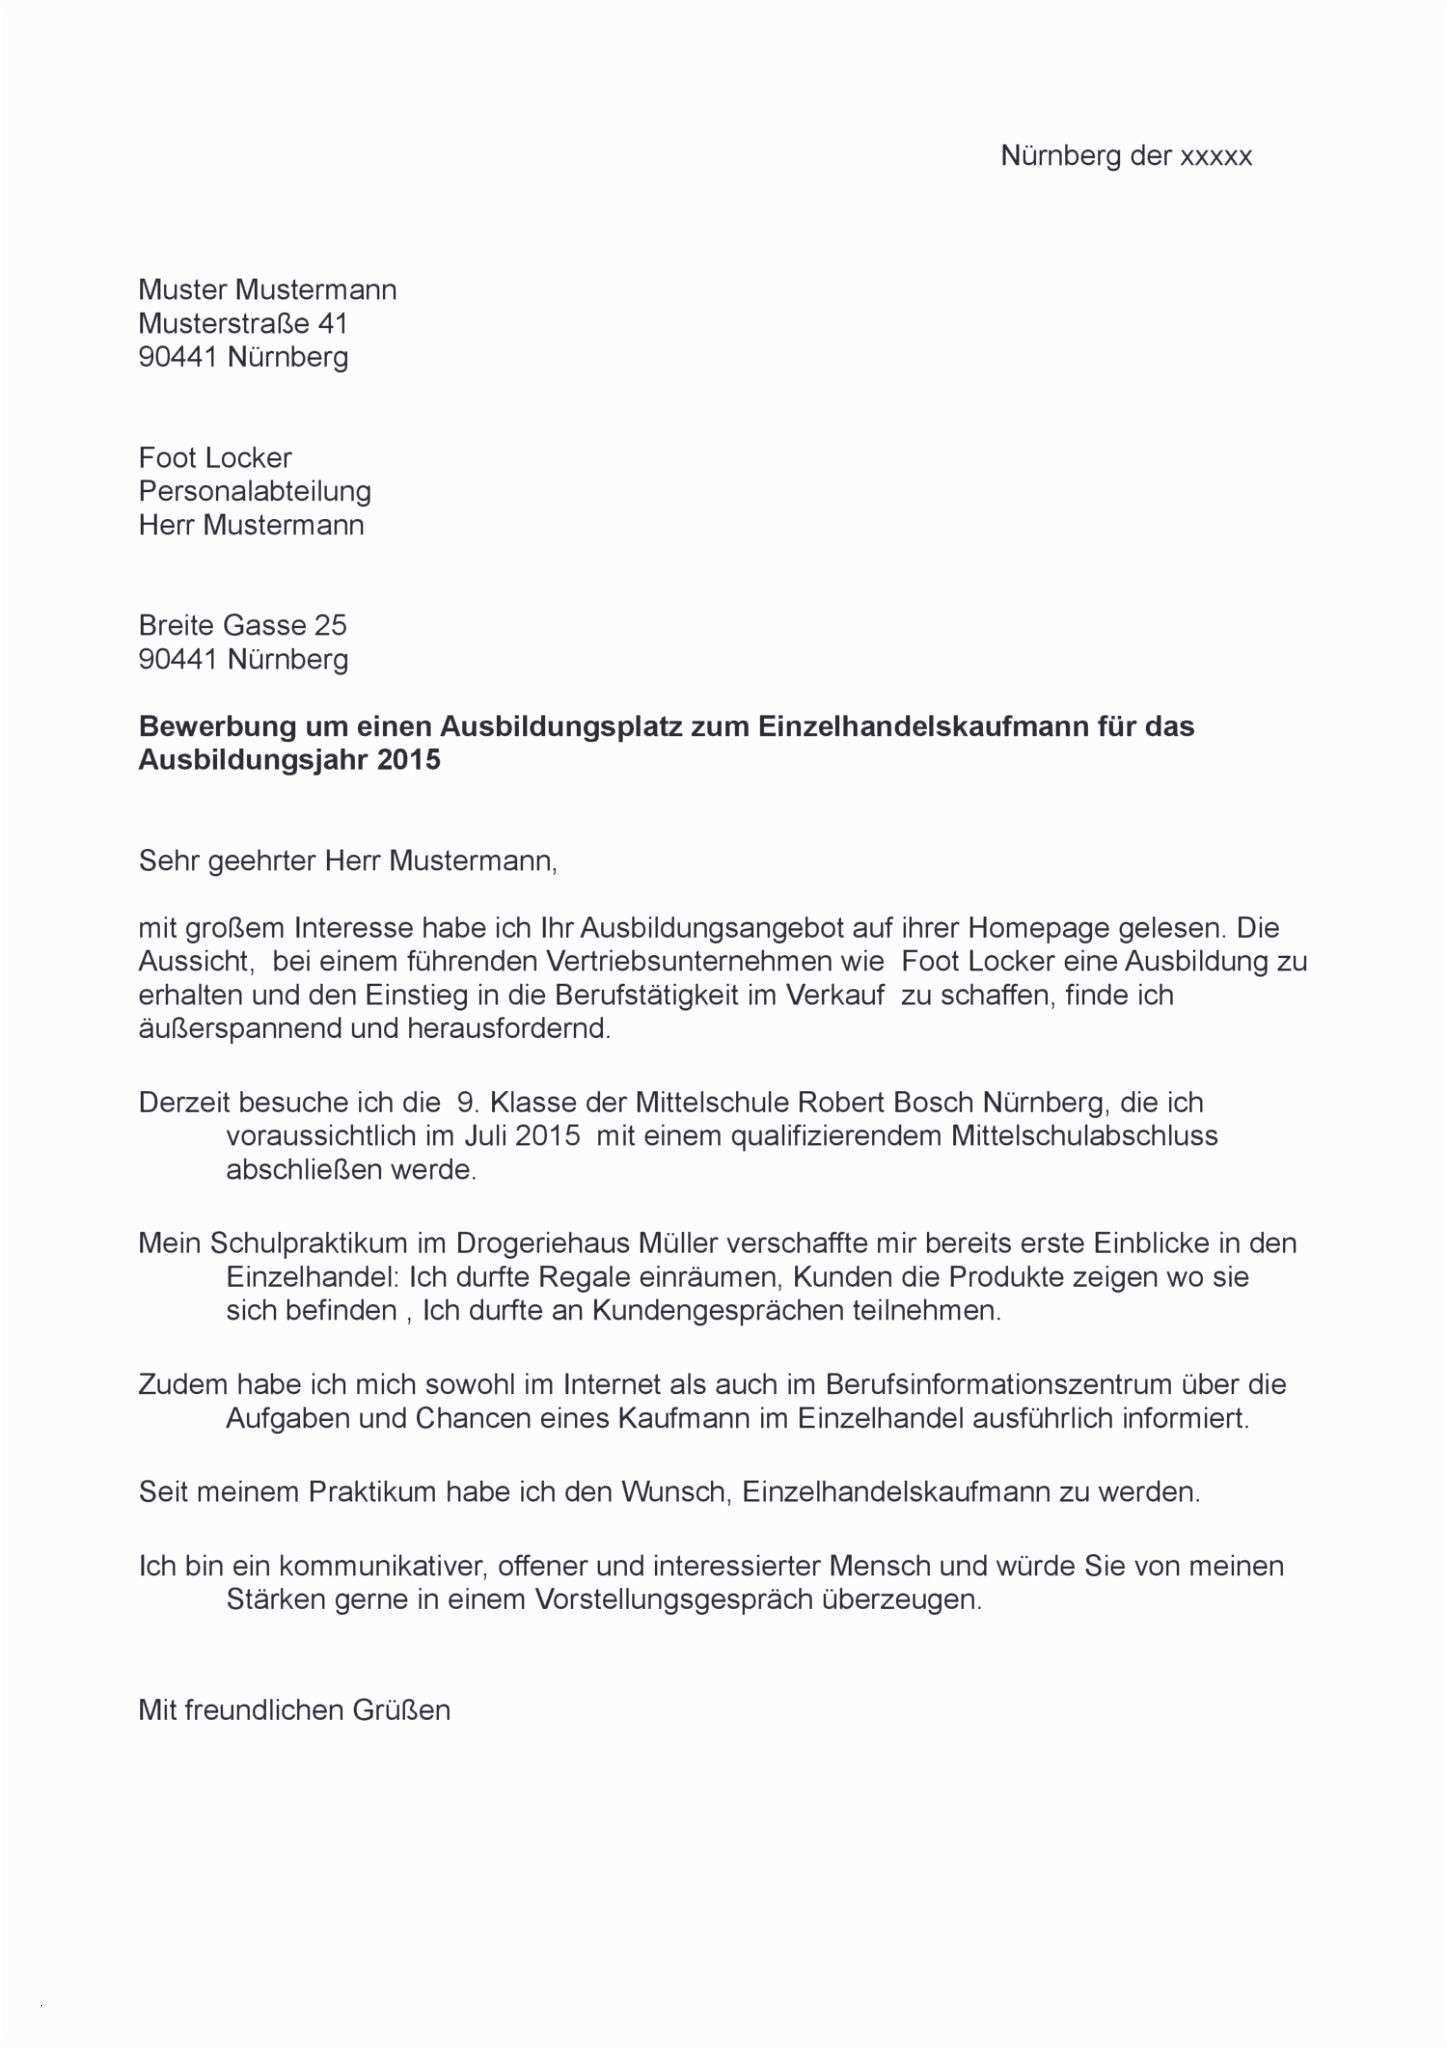 Wunderschon Rucktritt Ehrenamt Vorlage Cv Words Resume Template Free Resume Words